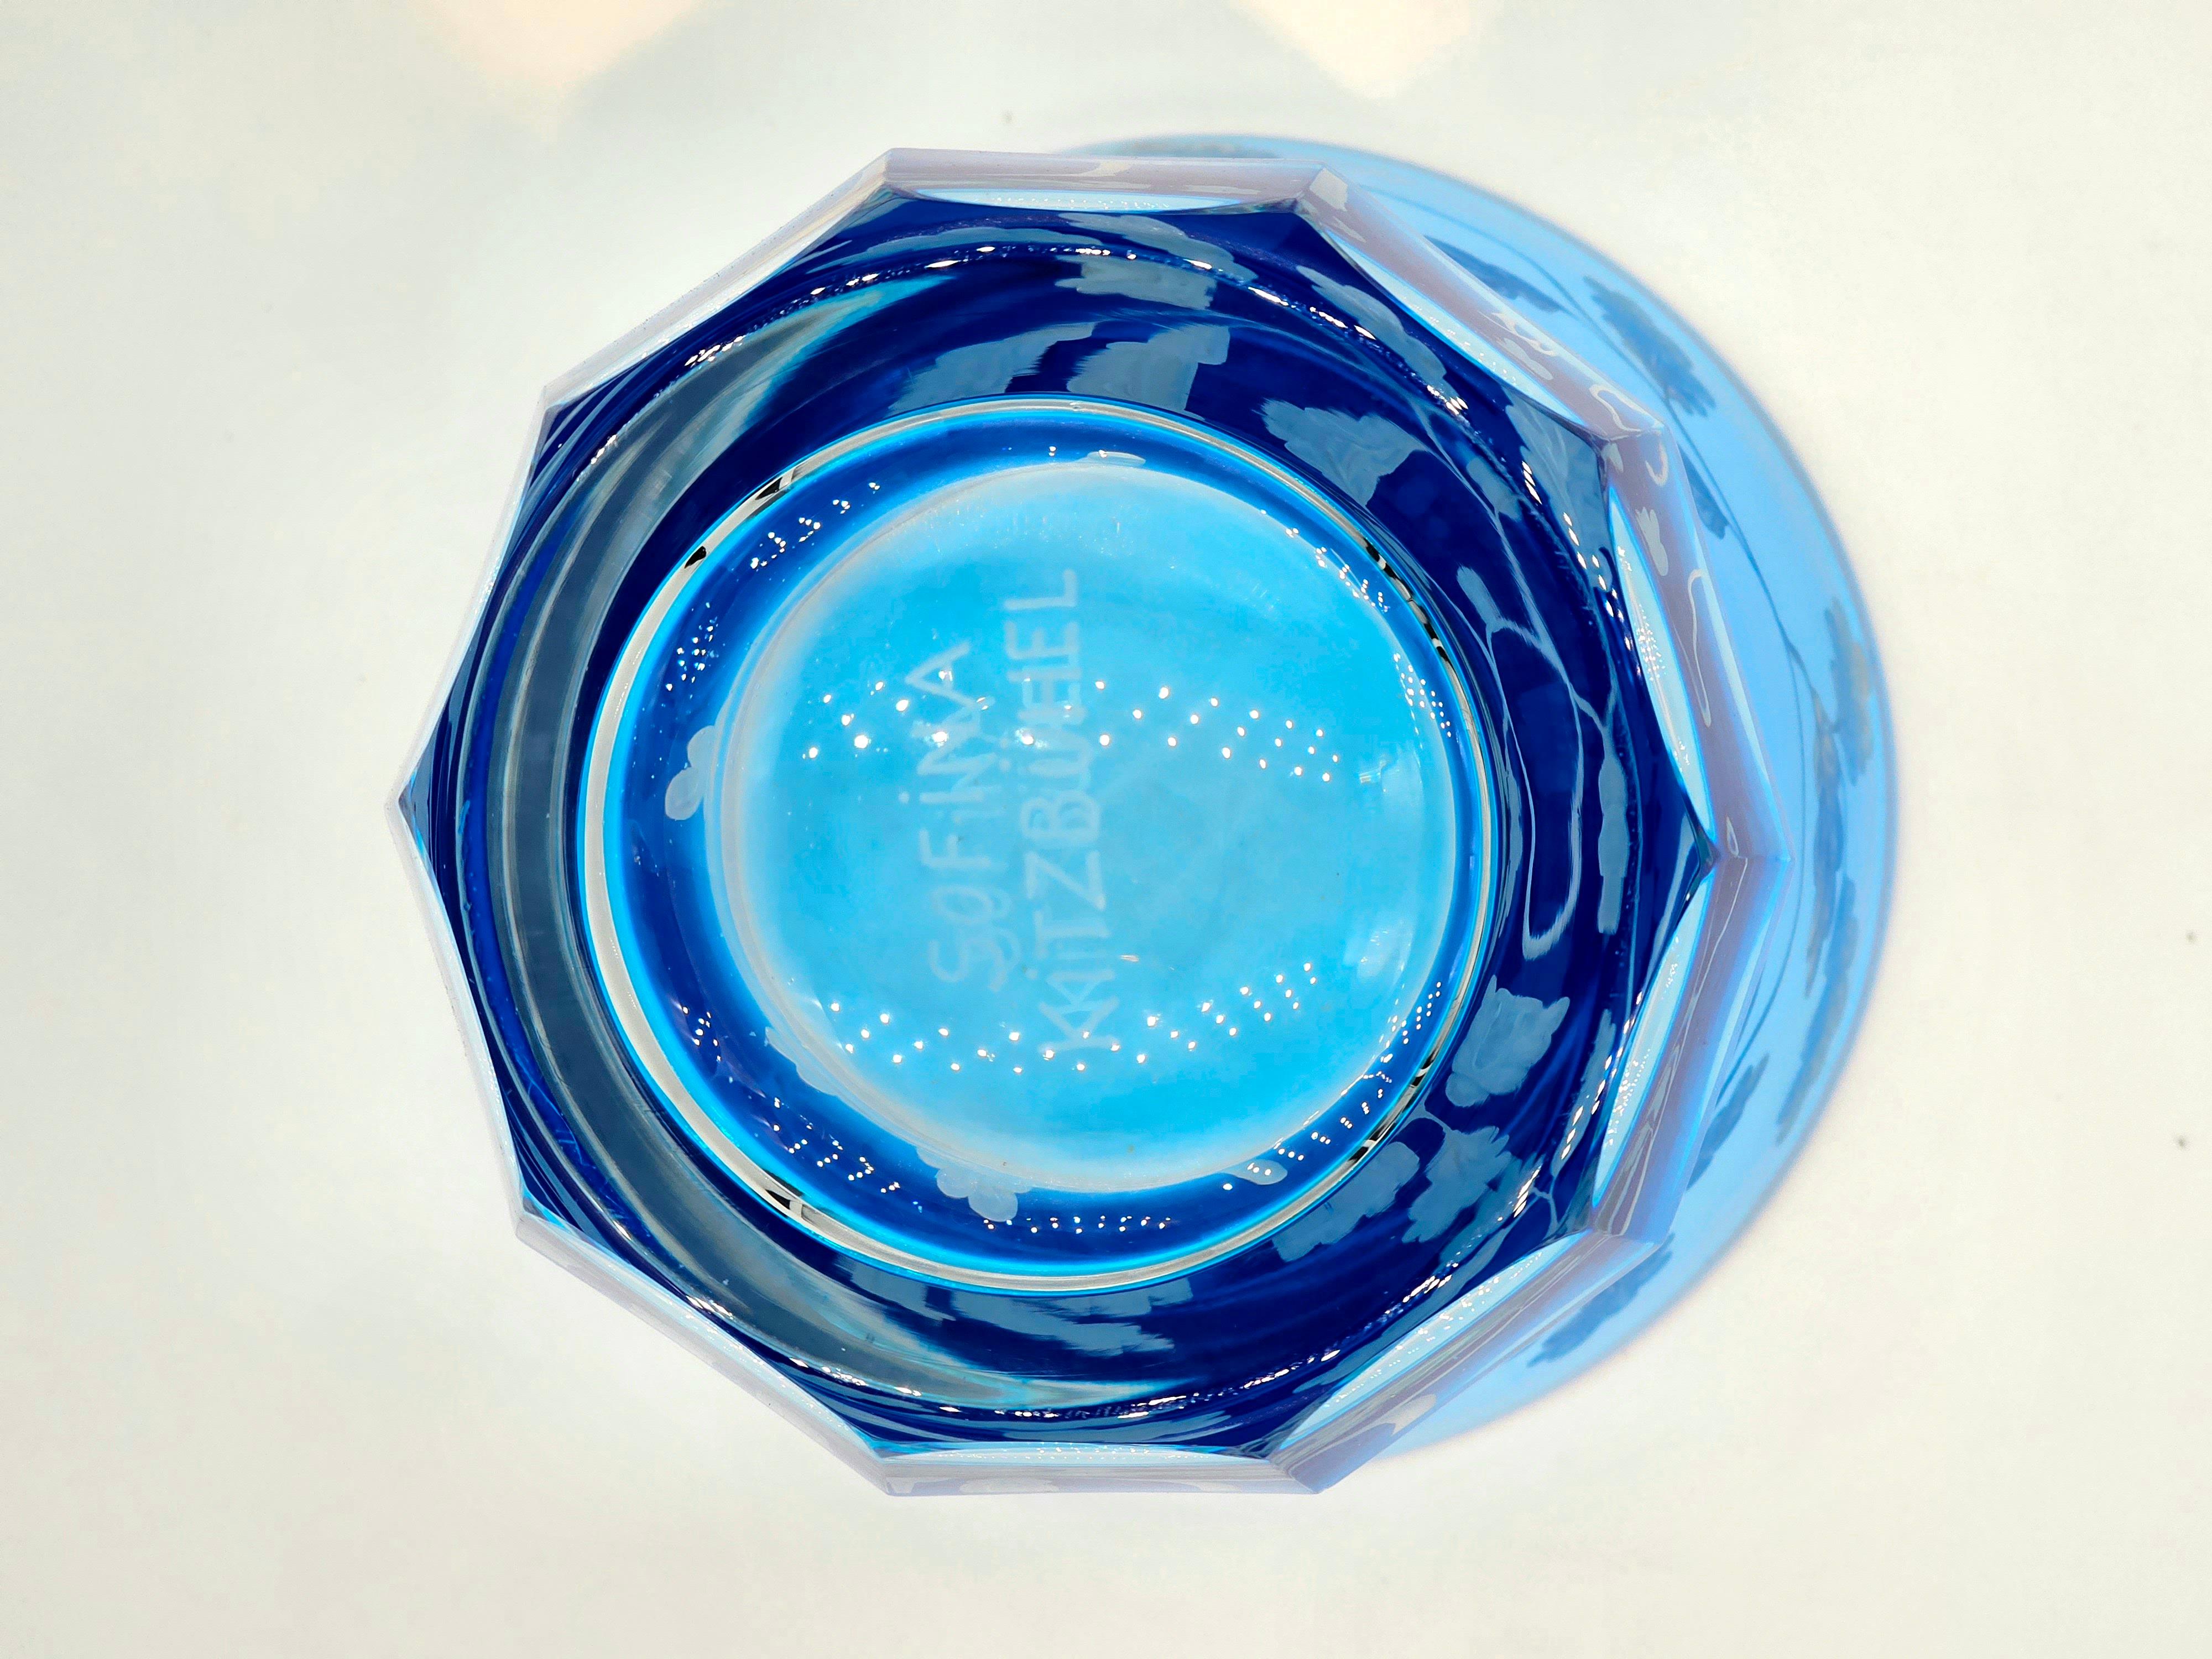 Vase aus mundgeblasenem Kristall in leuchtend blauem Glas mit einem Dekor aus Vögeln und Eichenblättern rundherum. Das Dekor wird von Künstlern freihändig graviert und der Boden des Glases wird von Hand geschnitzt. Das hier gezeigte blaue Glas kann